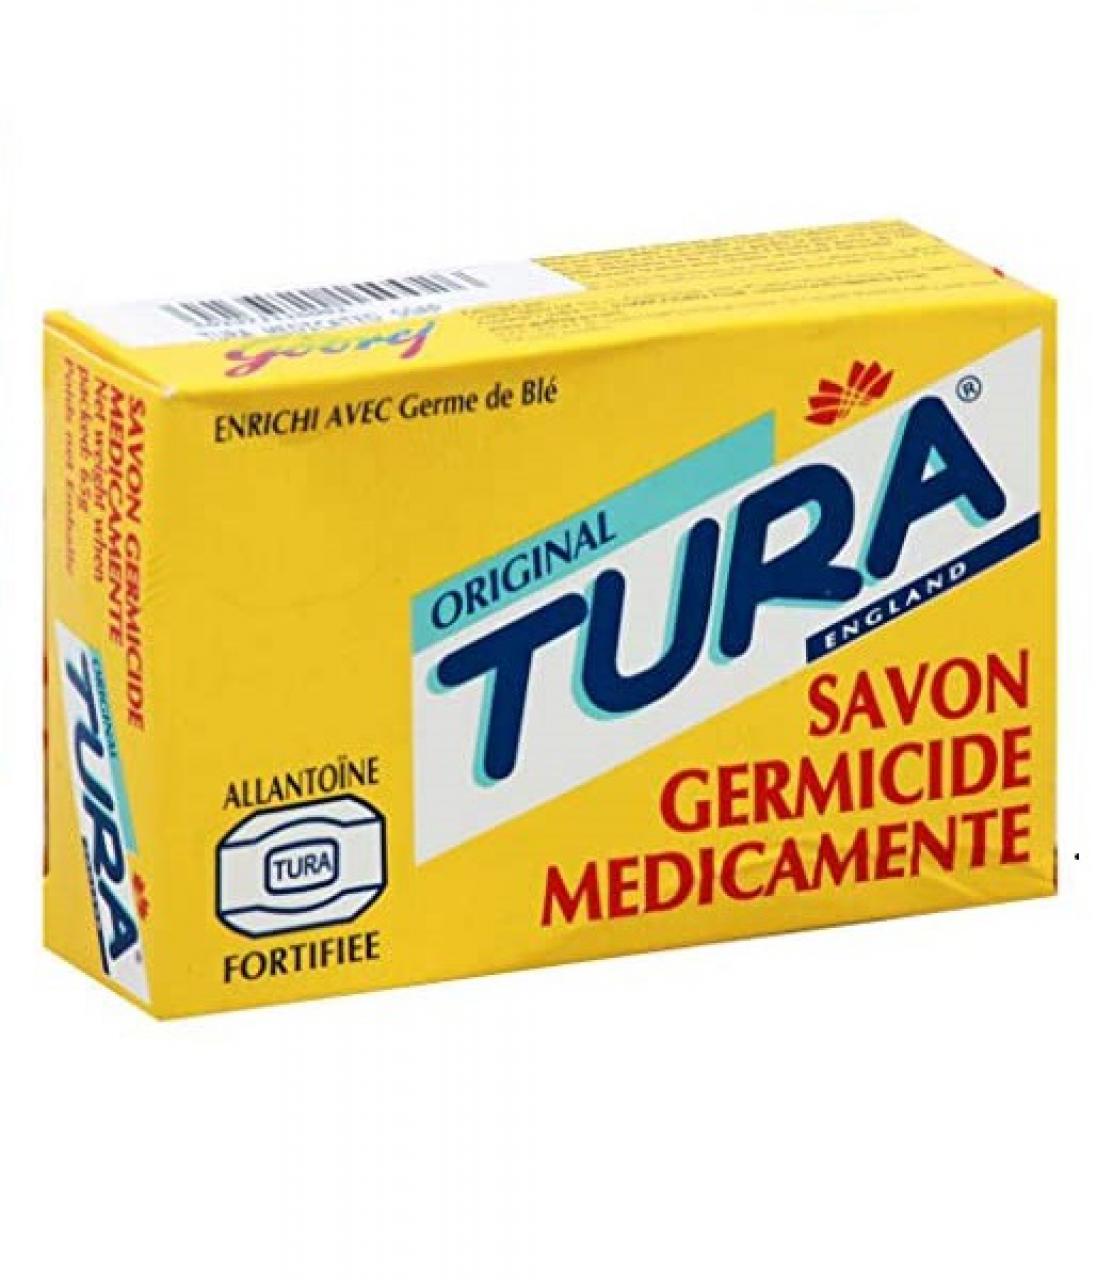 Tura soap